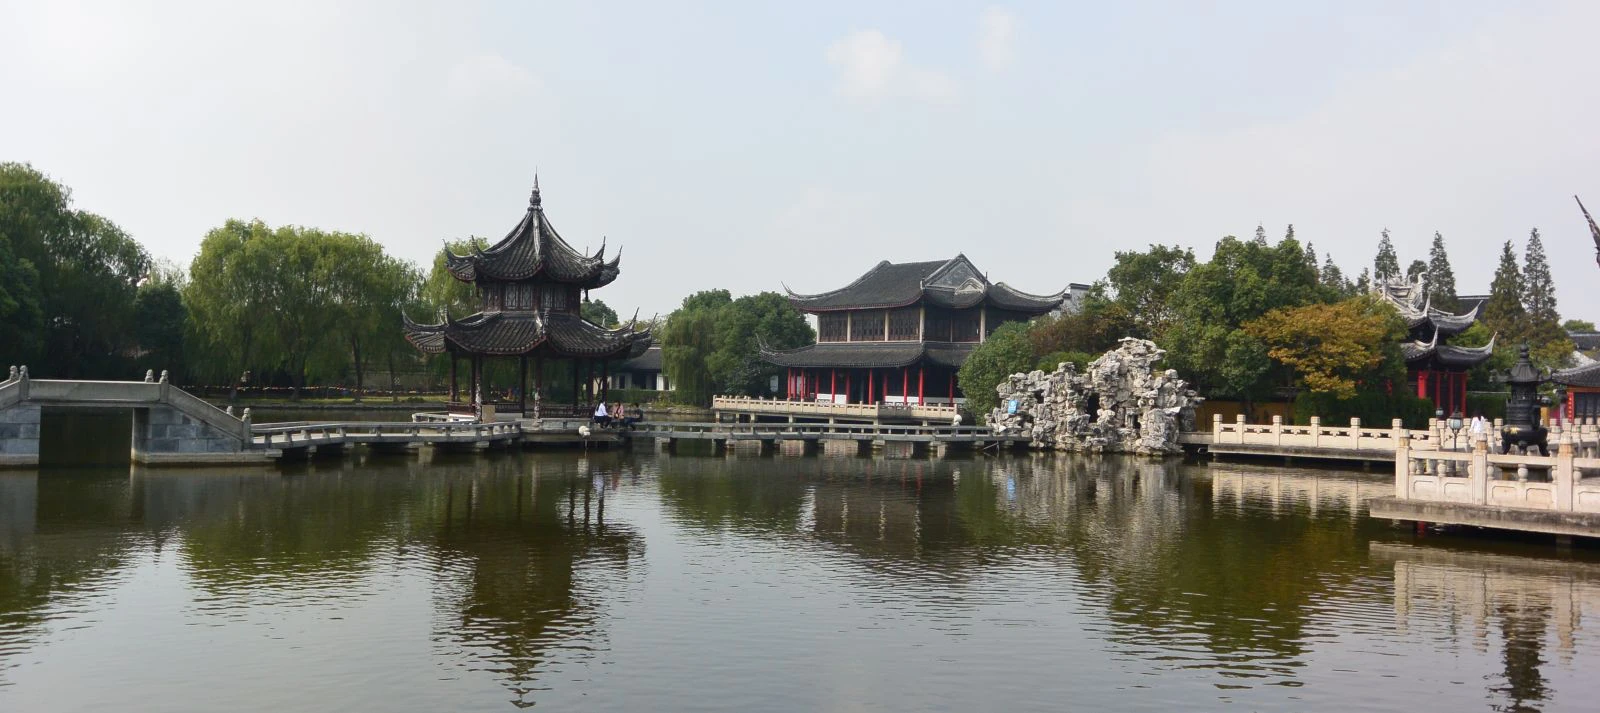 Bên cạnh Phượng Hoàng cổ trấn, Trung Quốc vẫn còn nhiều cổ trấn đẹp như tranh vẽ khác mà ai cũng muốn ghé thăm Tc3a2y20c490e1bb8720-20hoc3a0nh20thc3b4n20an20huy205-1534841665574803255245